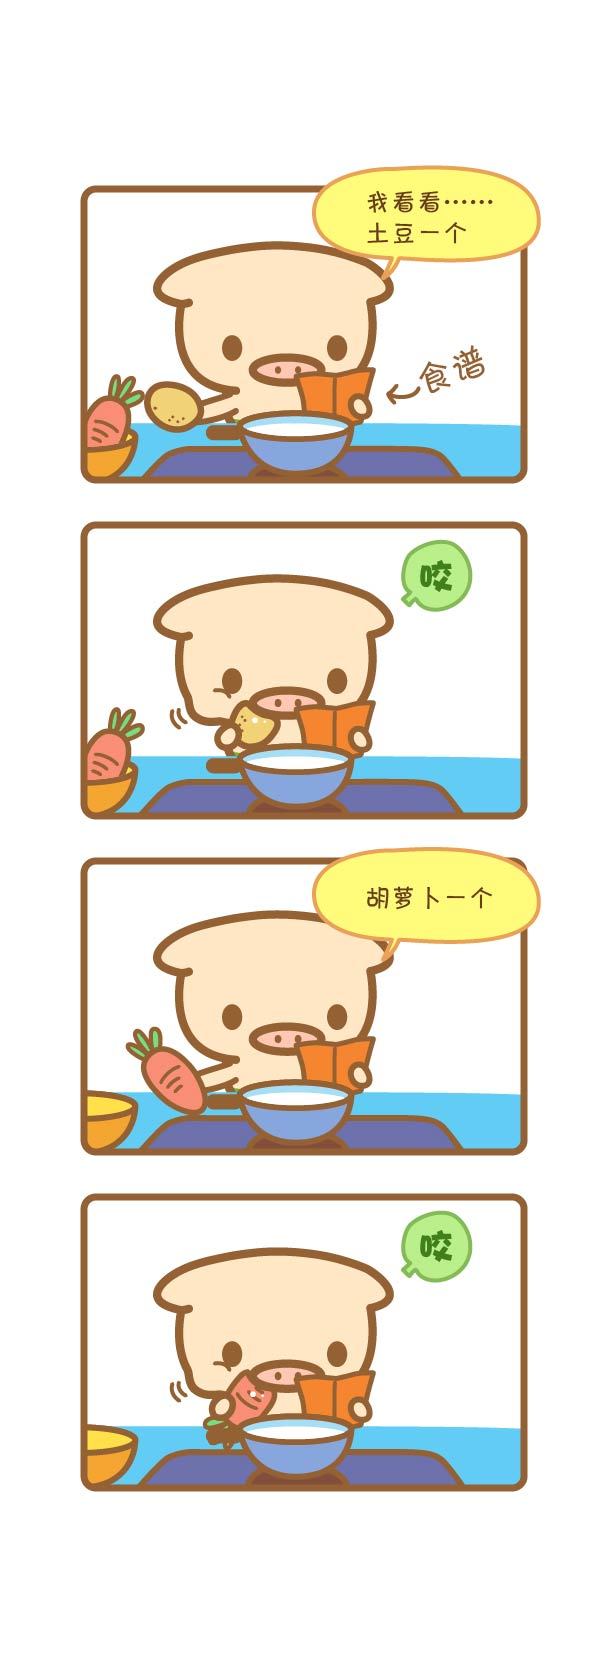 【猪咕力】搞笑幽默四格漫画合集(10P)